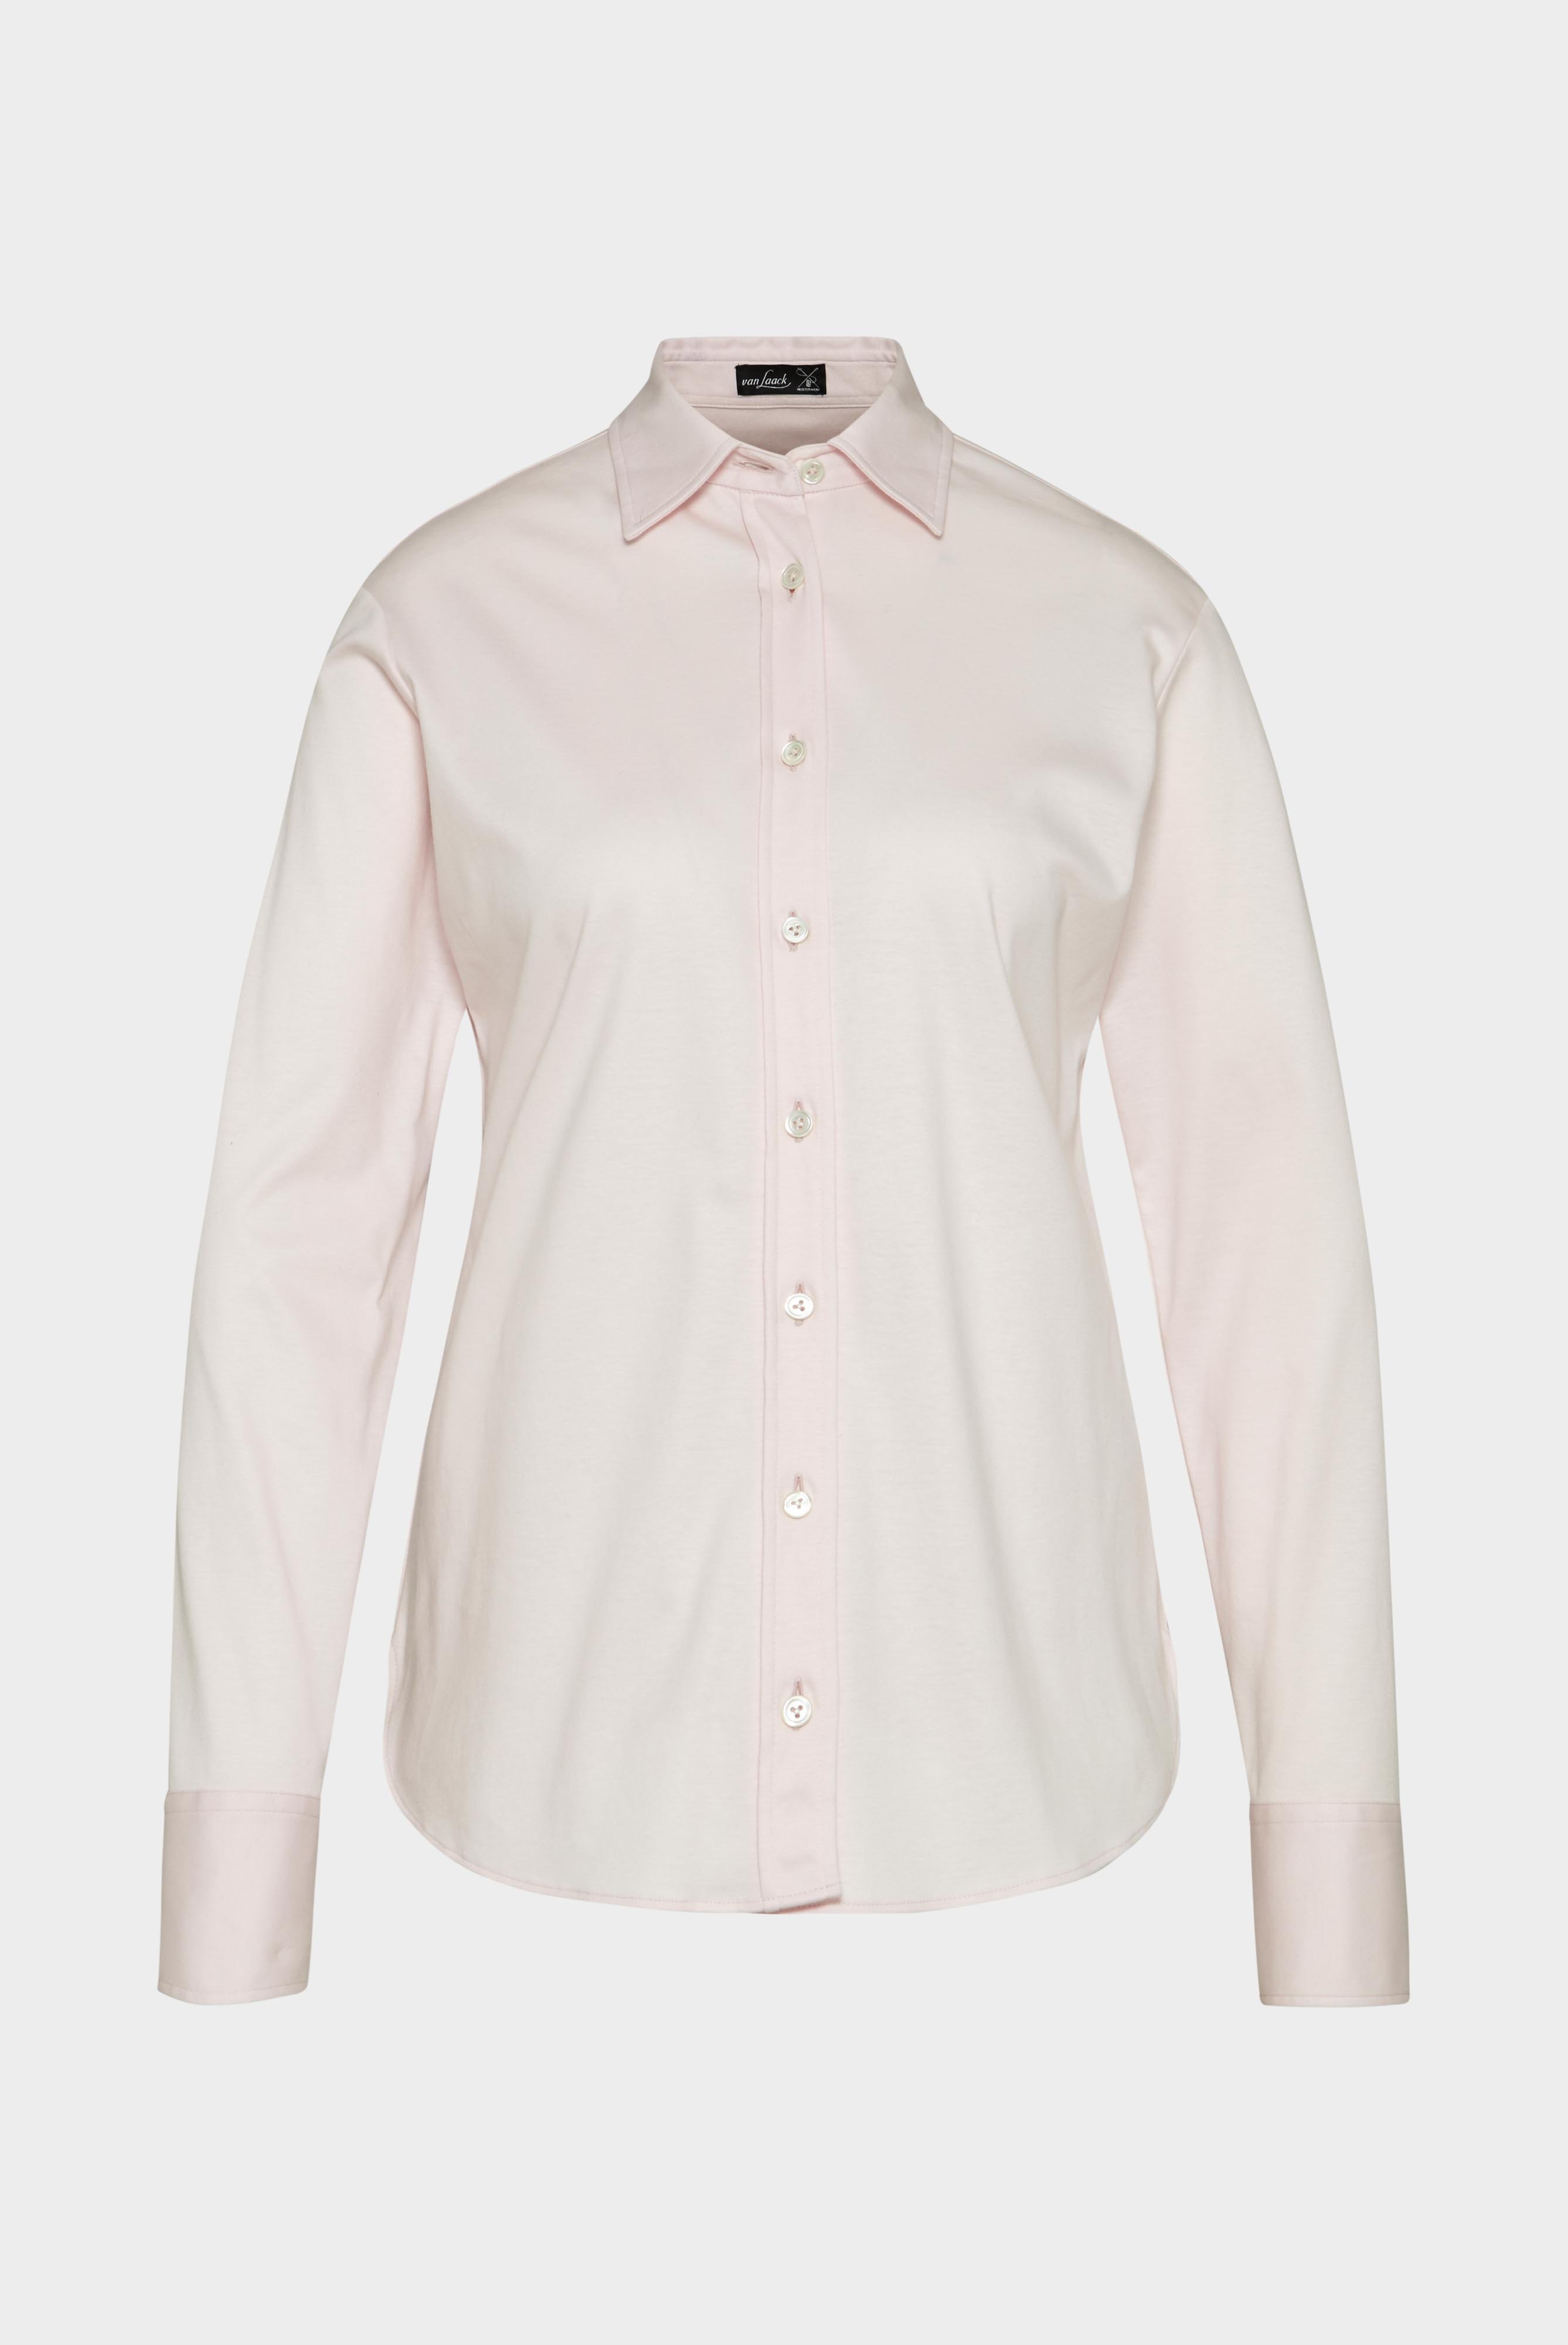 Casual Blusen+Taillierte Jersey Hemdbluse aus Schweizer Baumwolle+05.603Y..180031.510.38